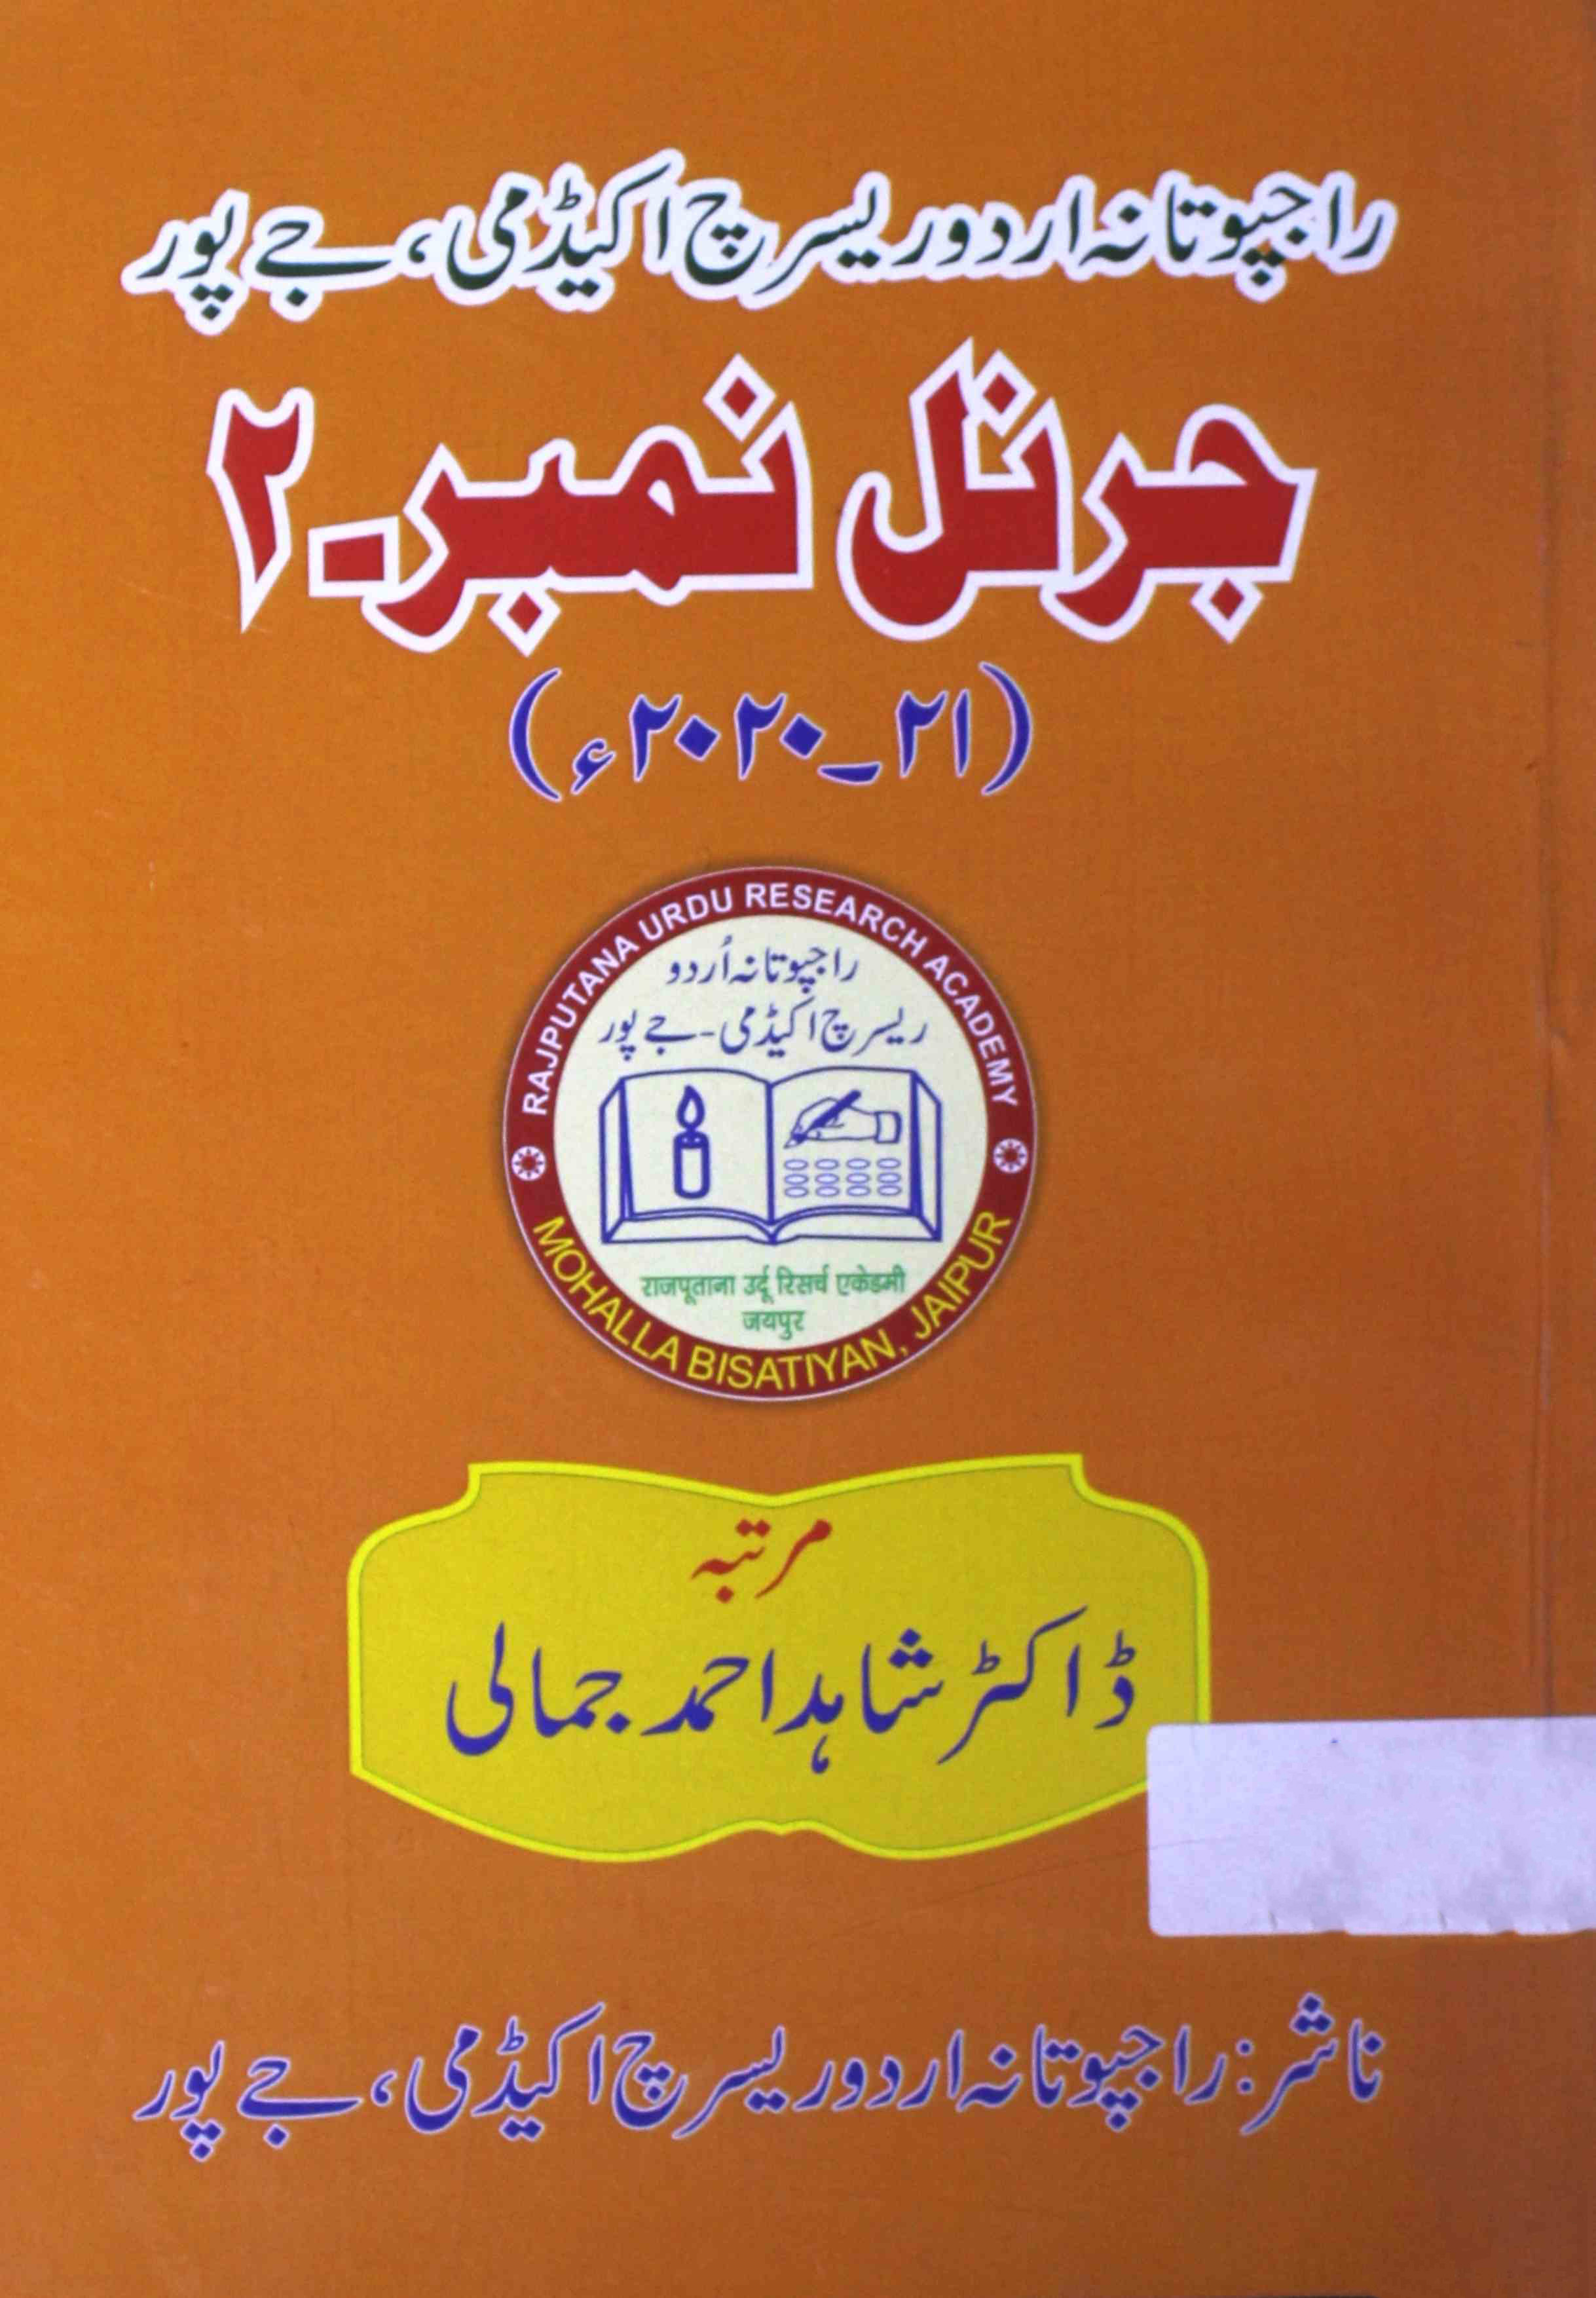 raajputaana urdu research academy, jaipur journal number 2-Shumaara Number-002